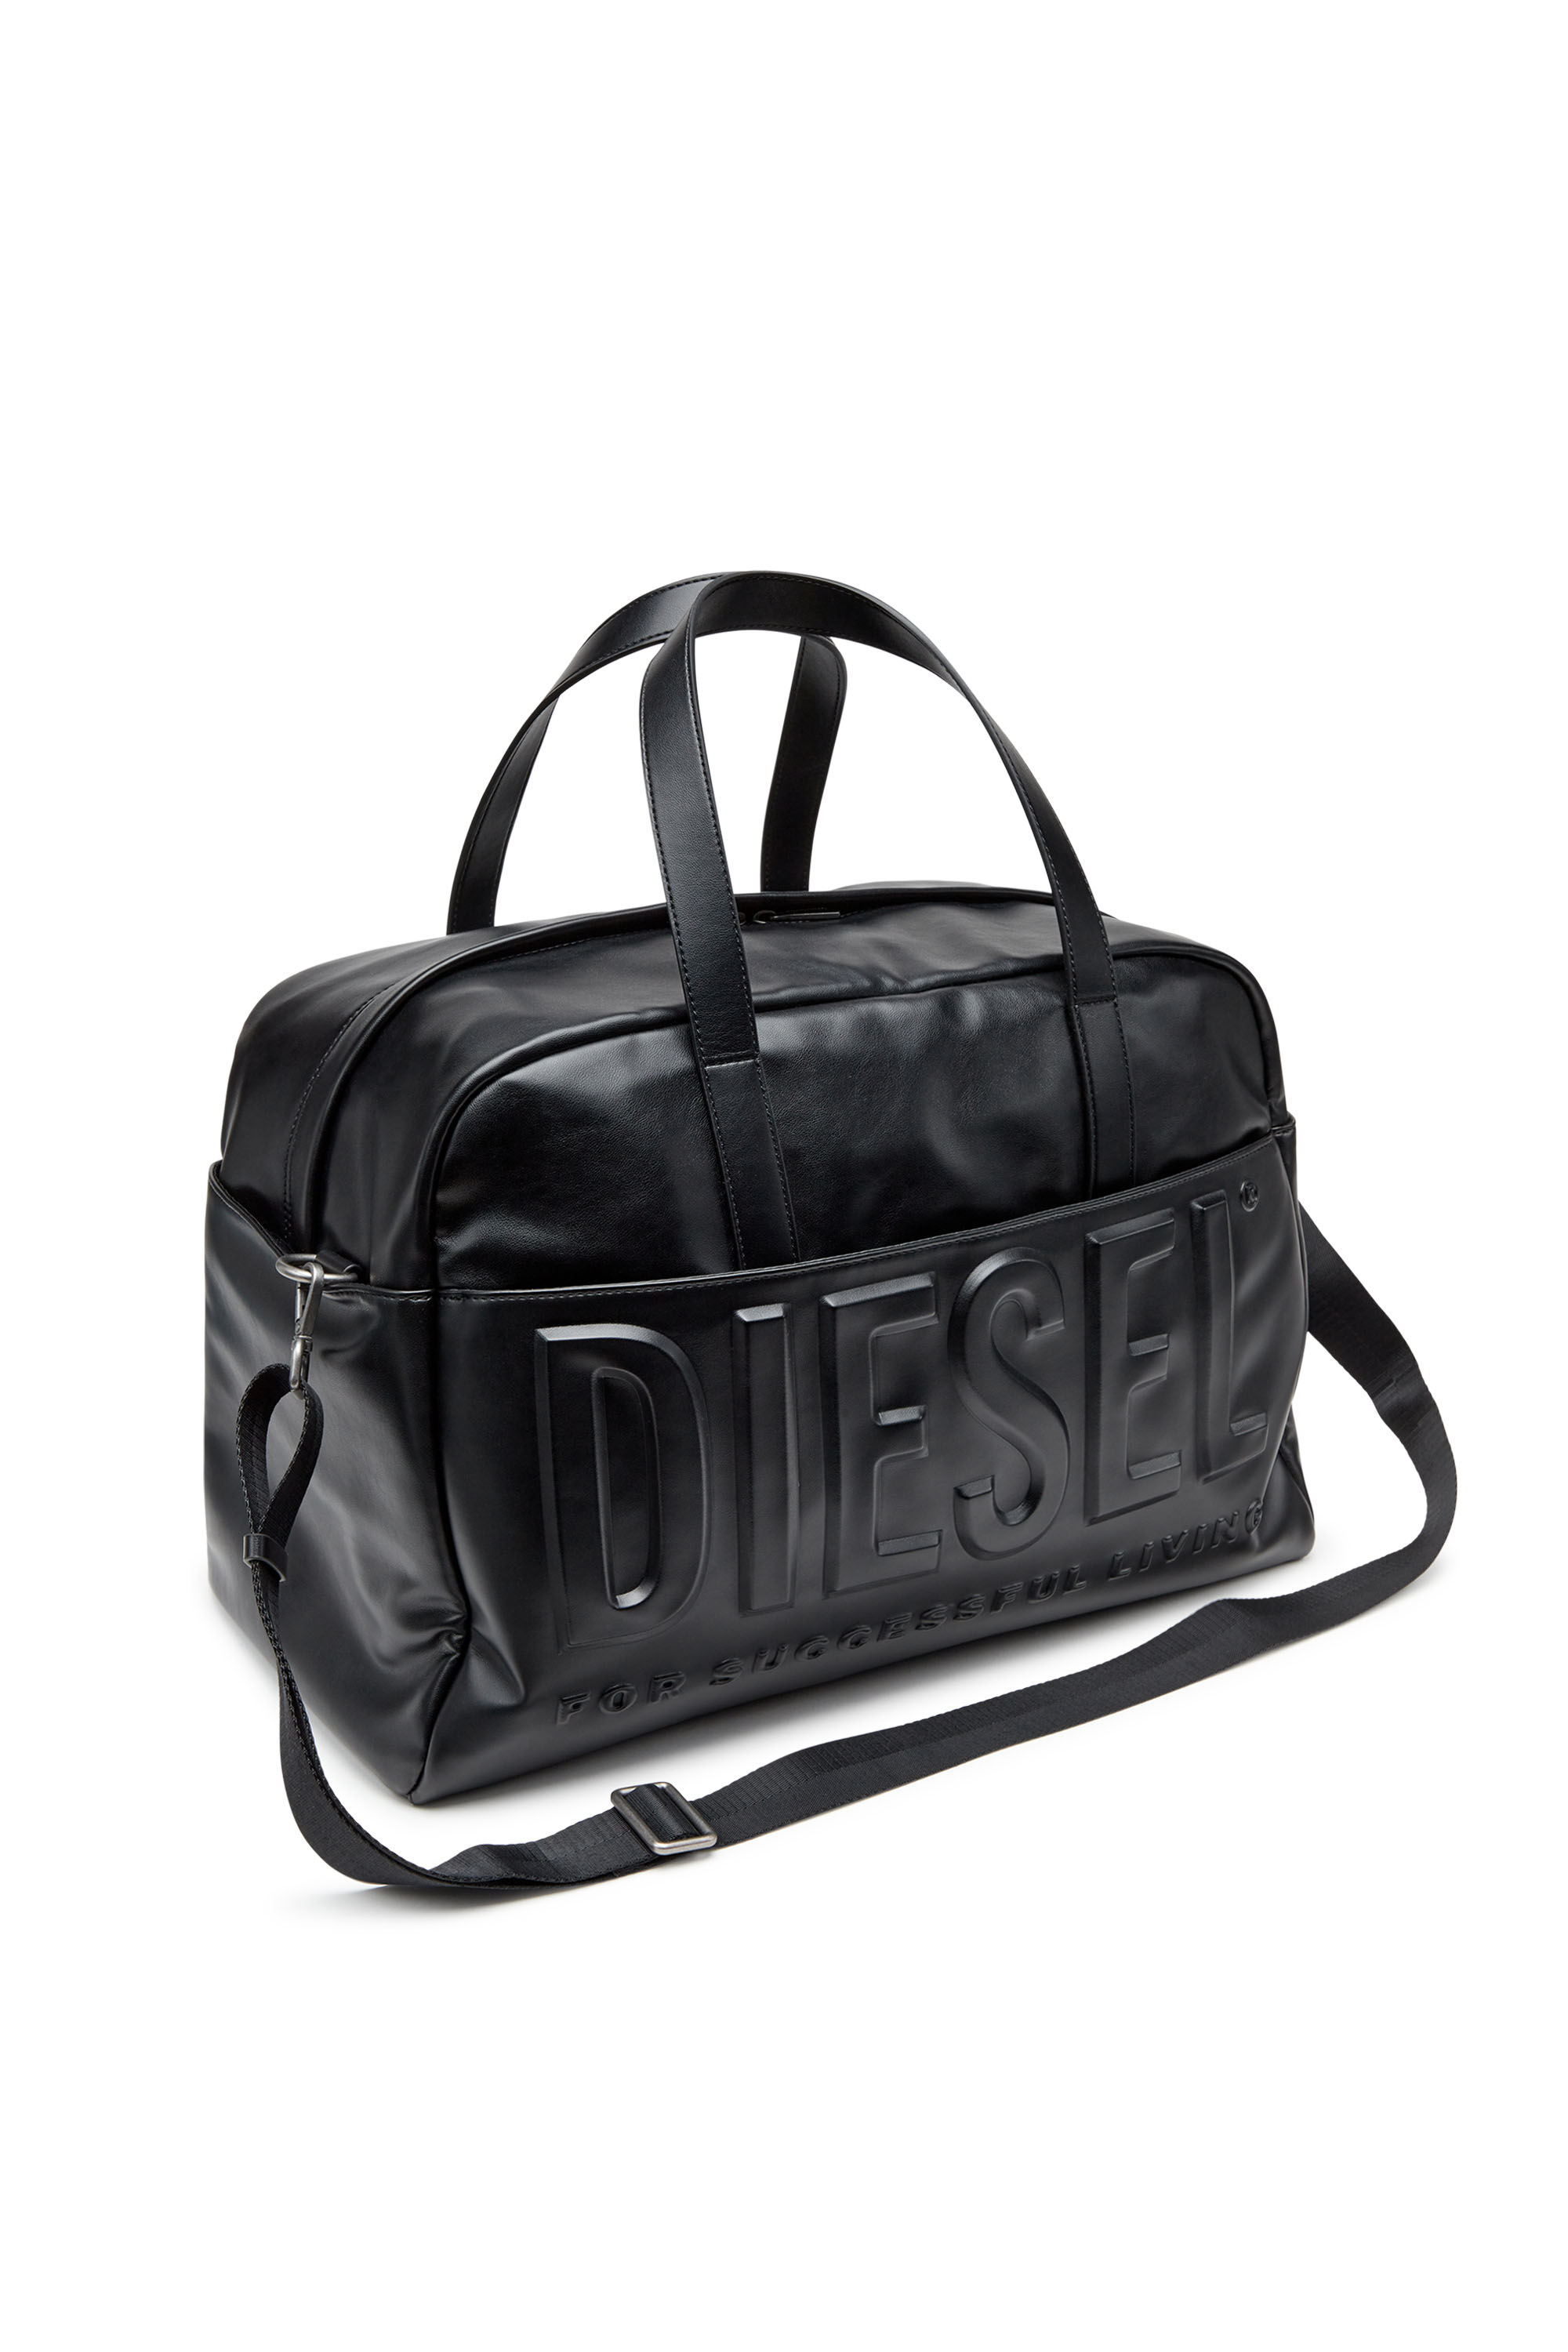 DSL 3D DUFFLE L X Dsl 3D Duffle L X Travel Bag - Duffle bag with ...